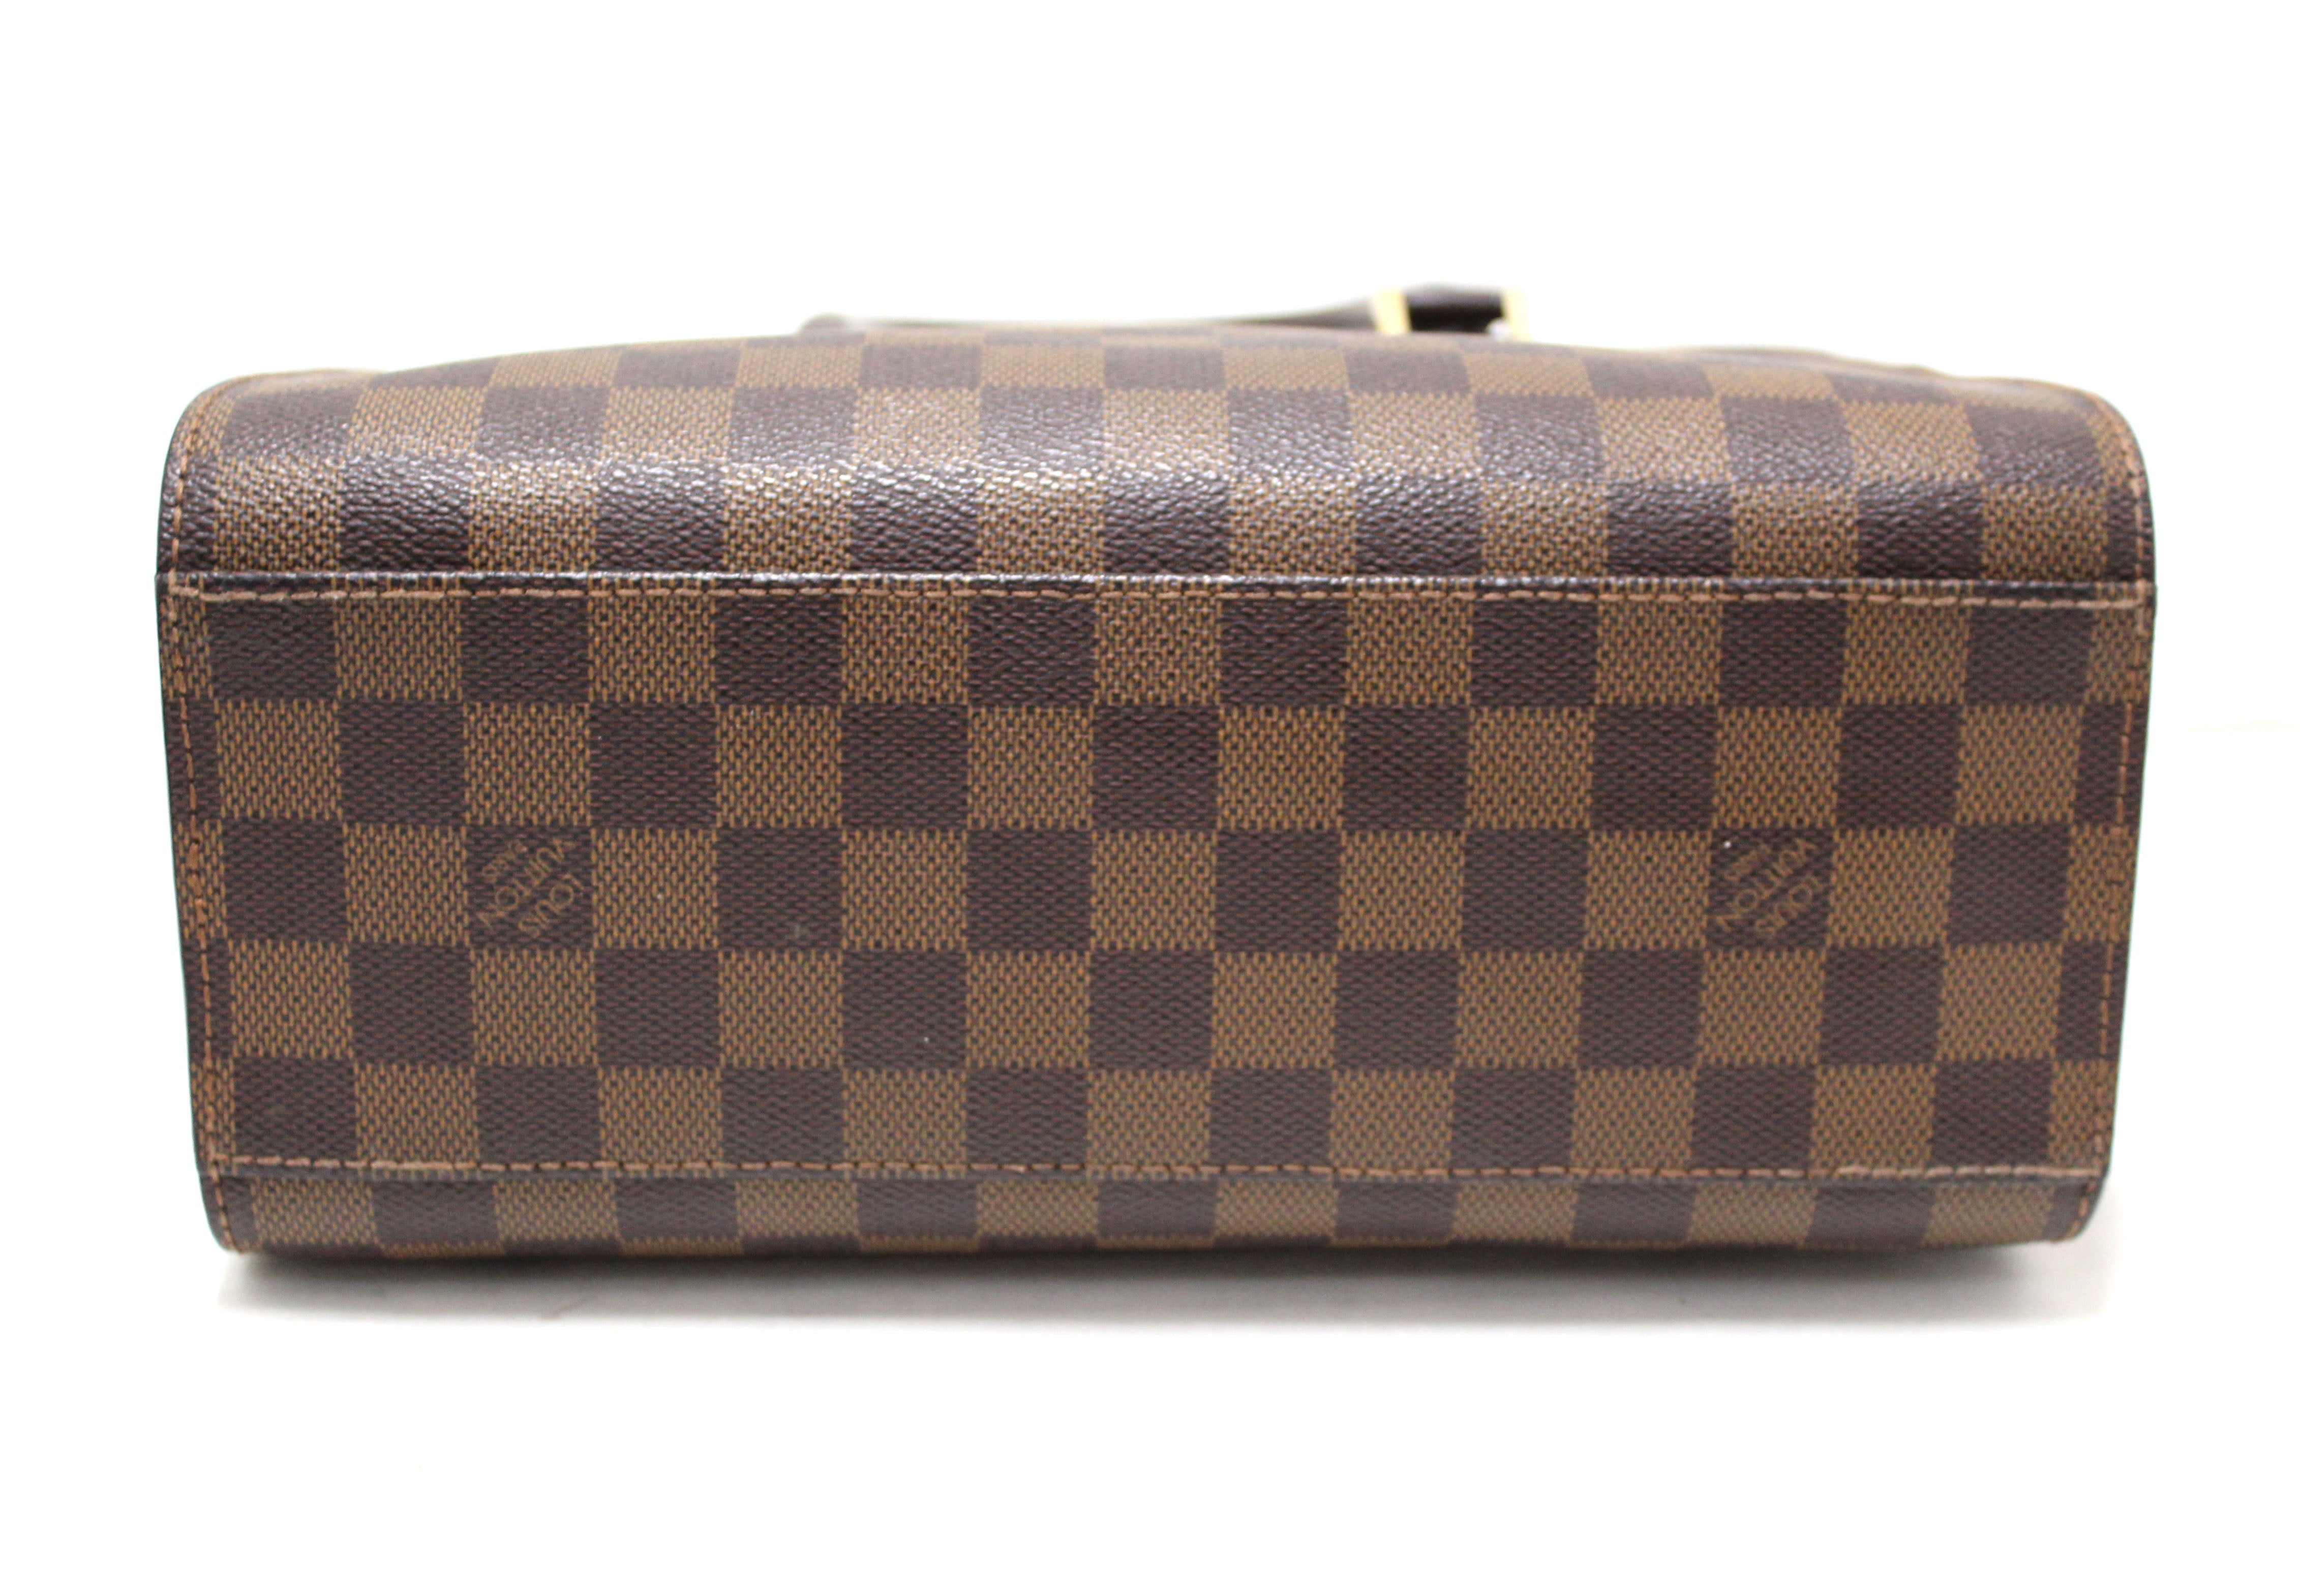 Louis Vuitton, Bags, Authentic Vintage Louis Vuitton Triana Damier Ebene  Bag